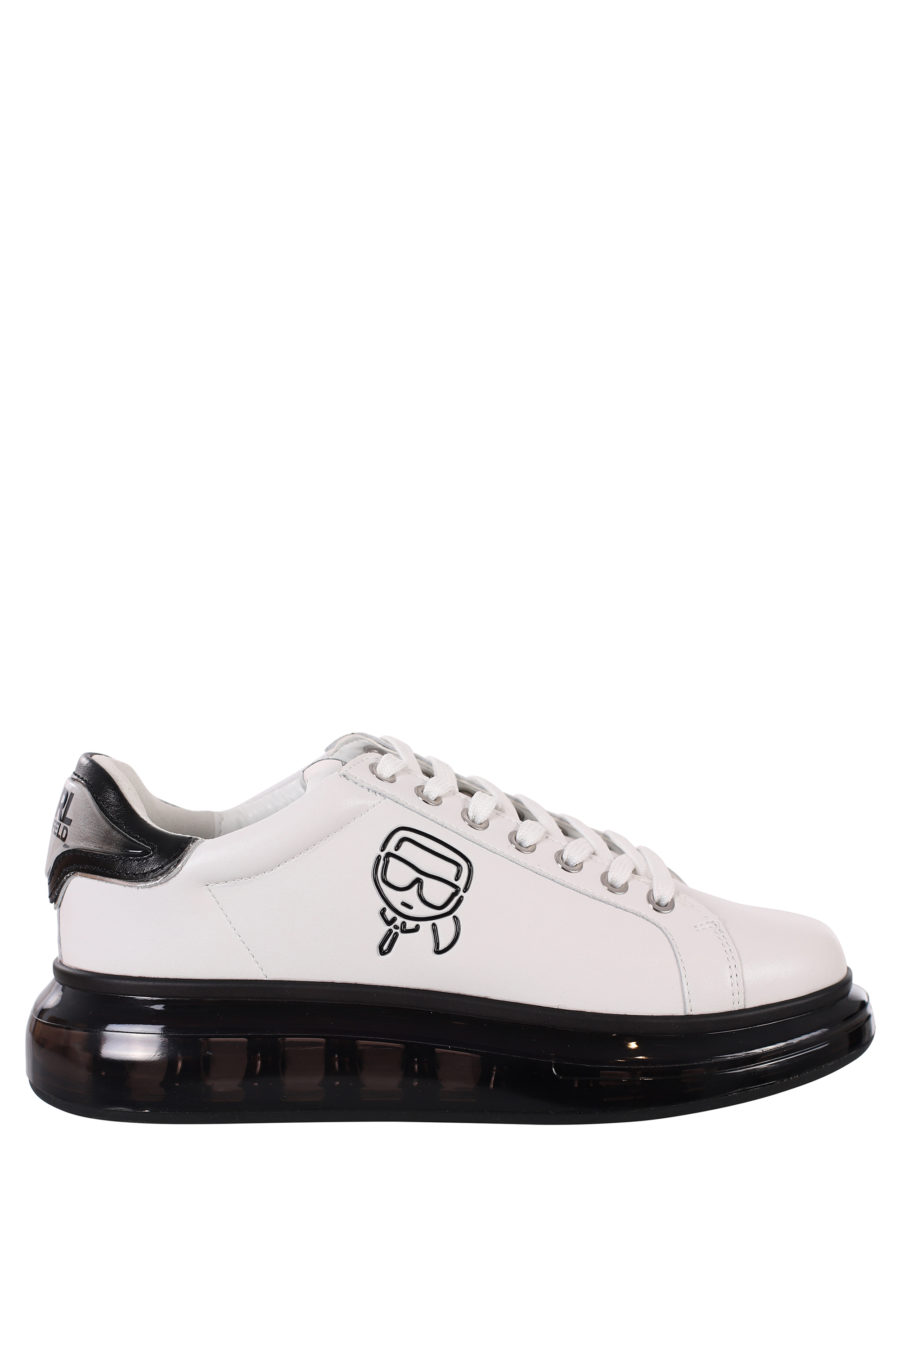 Zapatillas blancas con logo silueta negro y suela negra - IMG 0419